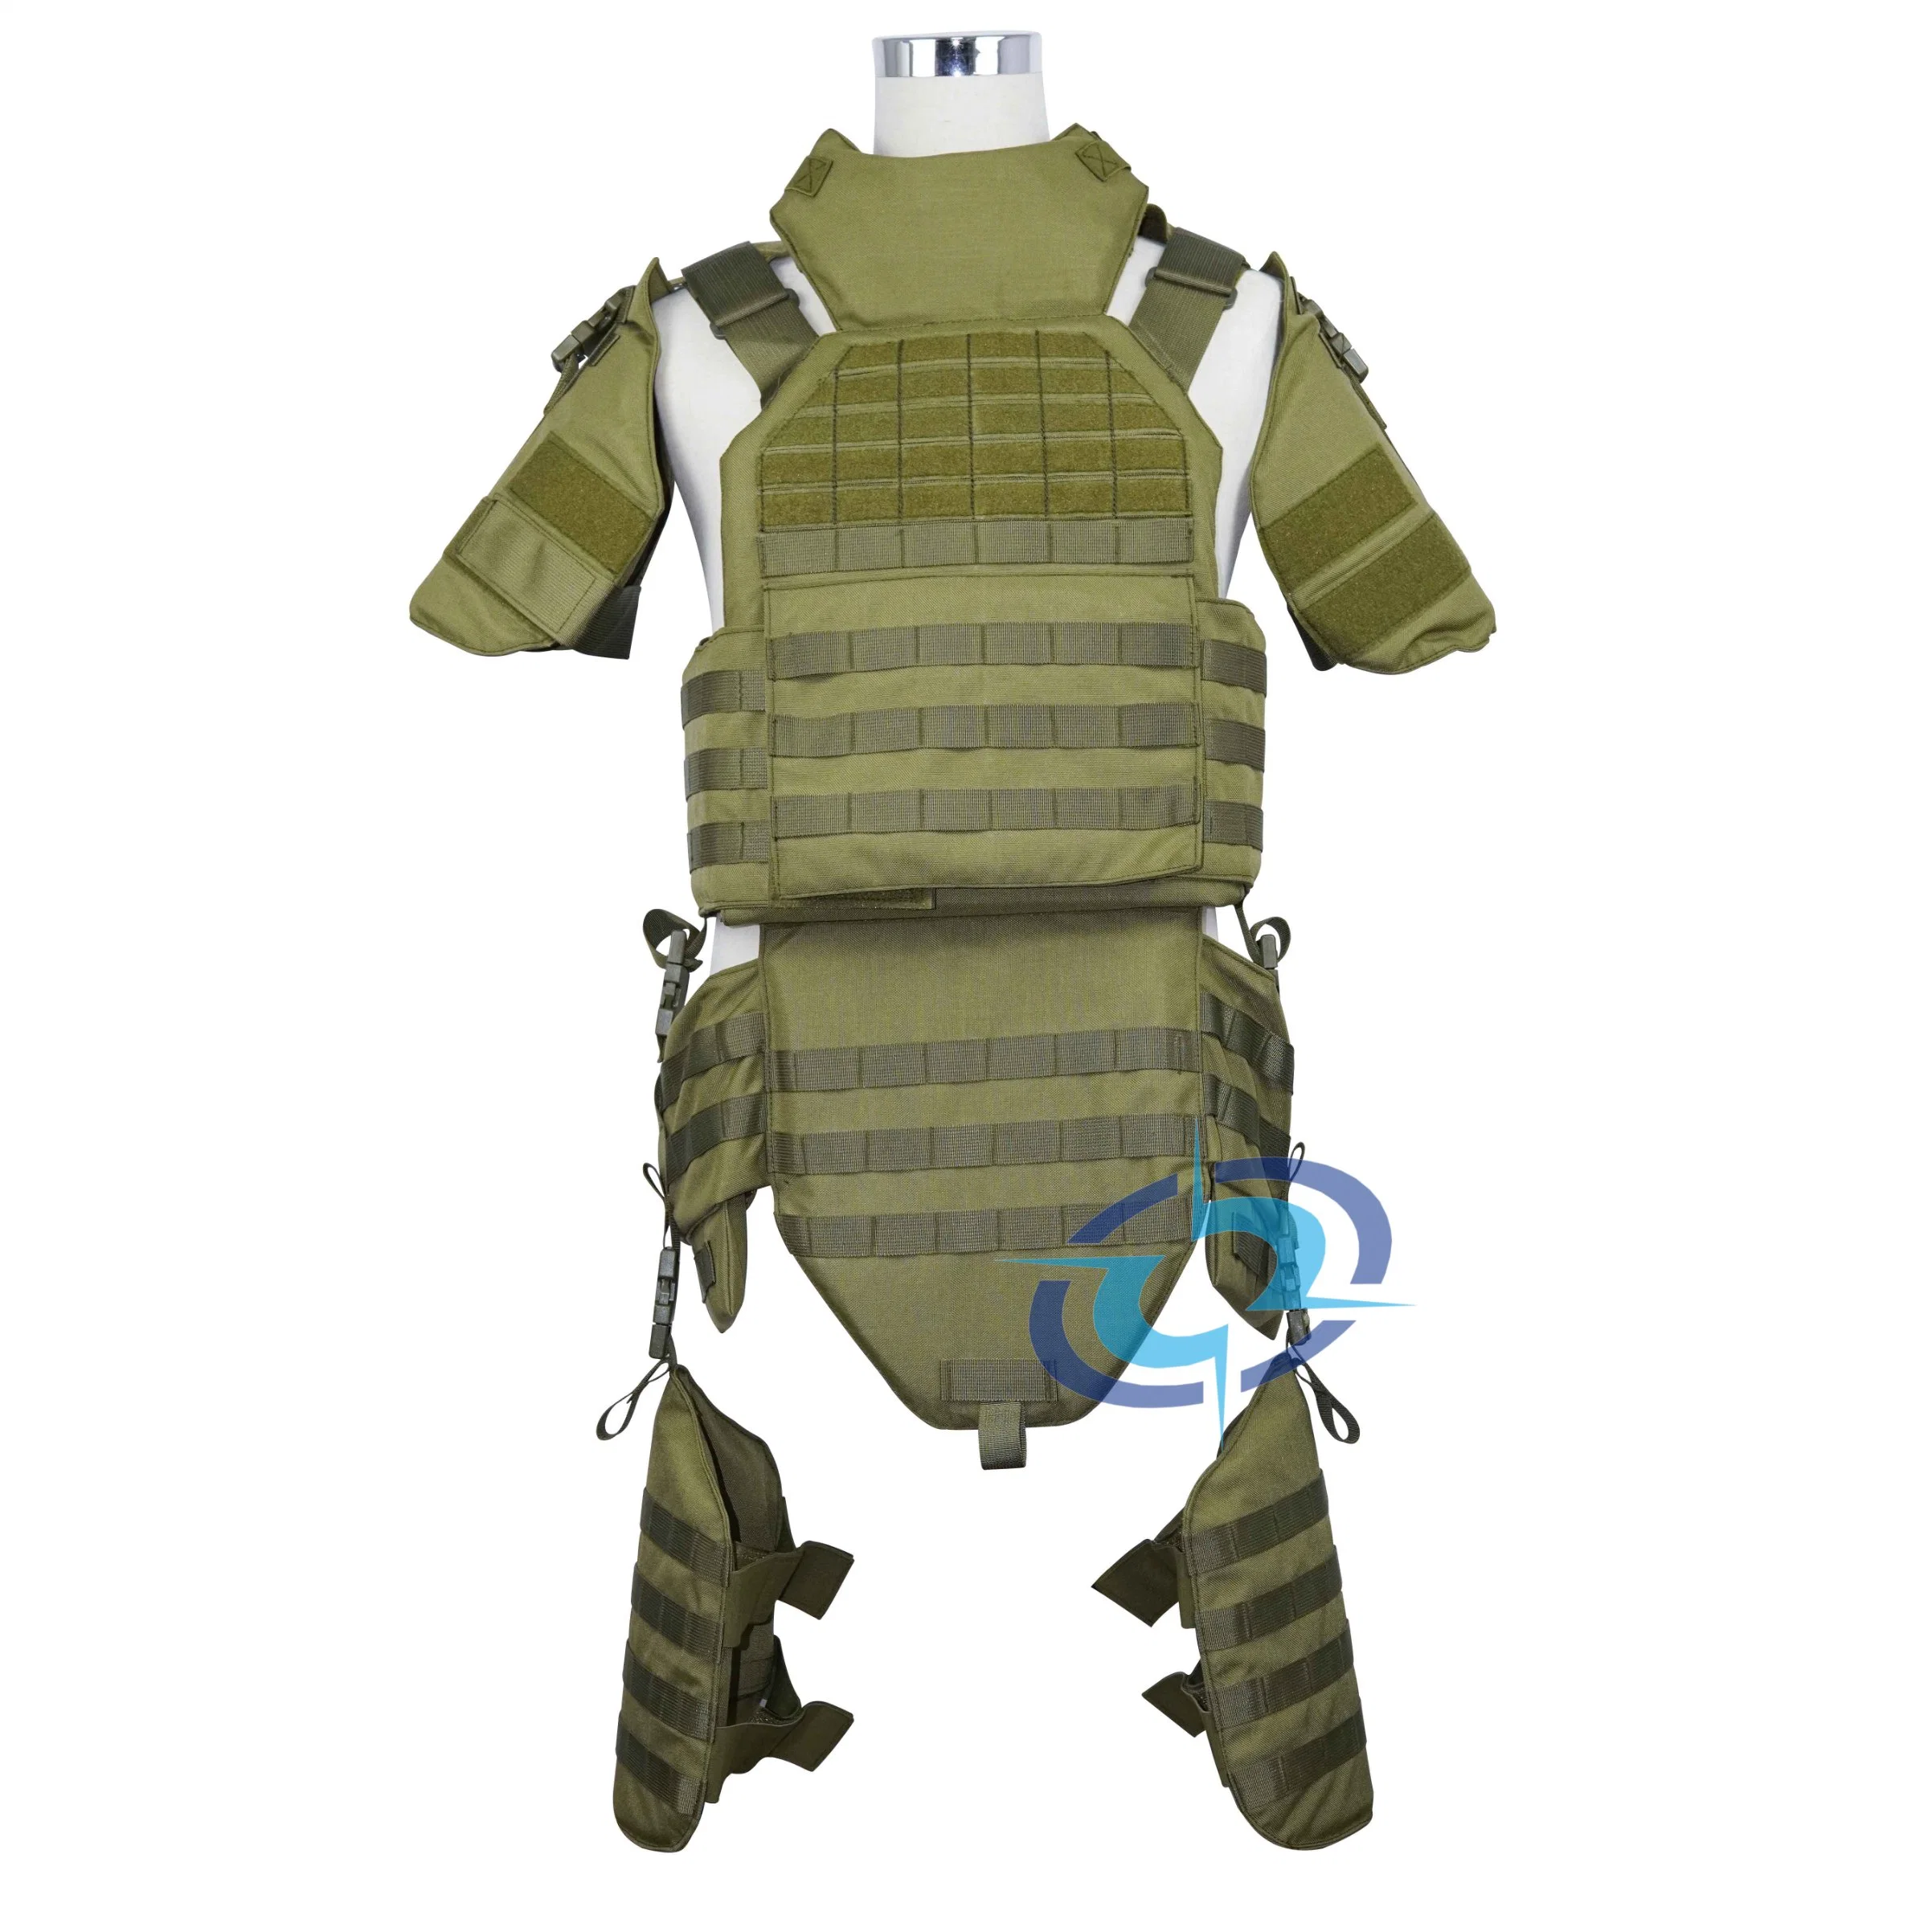 Nij IV Body Armor Police военный тактический/боевой полный защитный корпус Жилет с защитой от пуленепробиваемого снаряжения